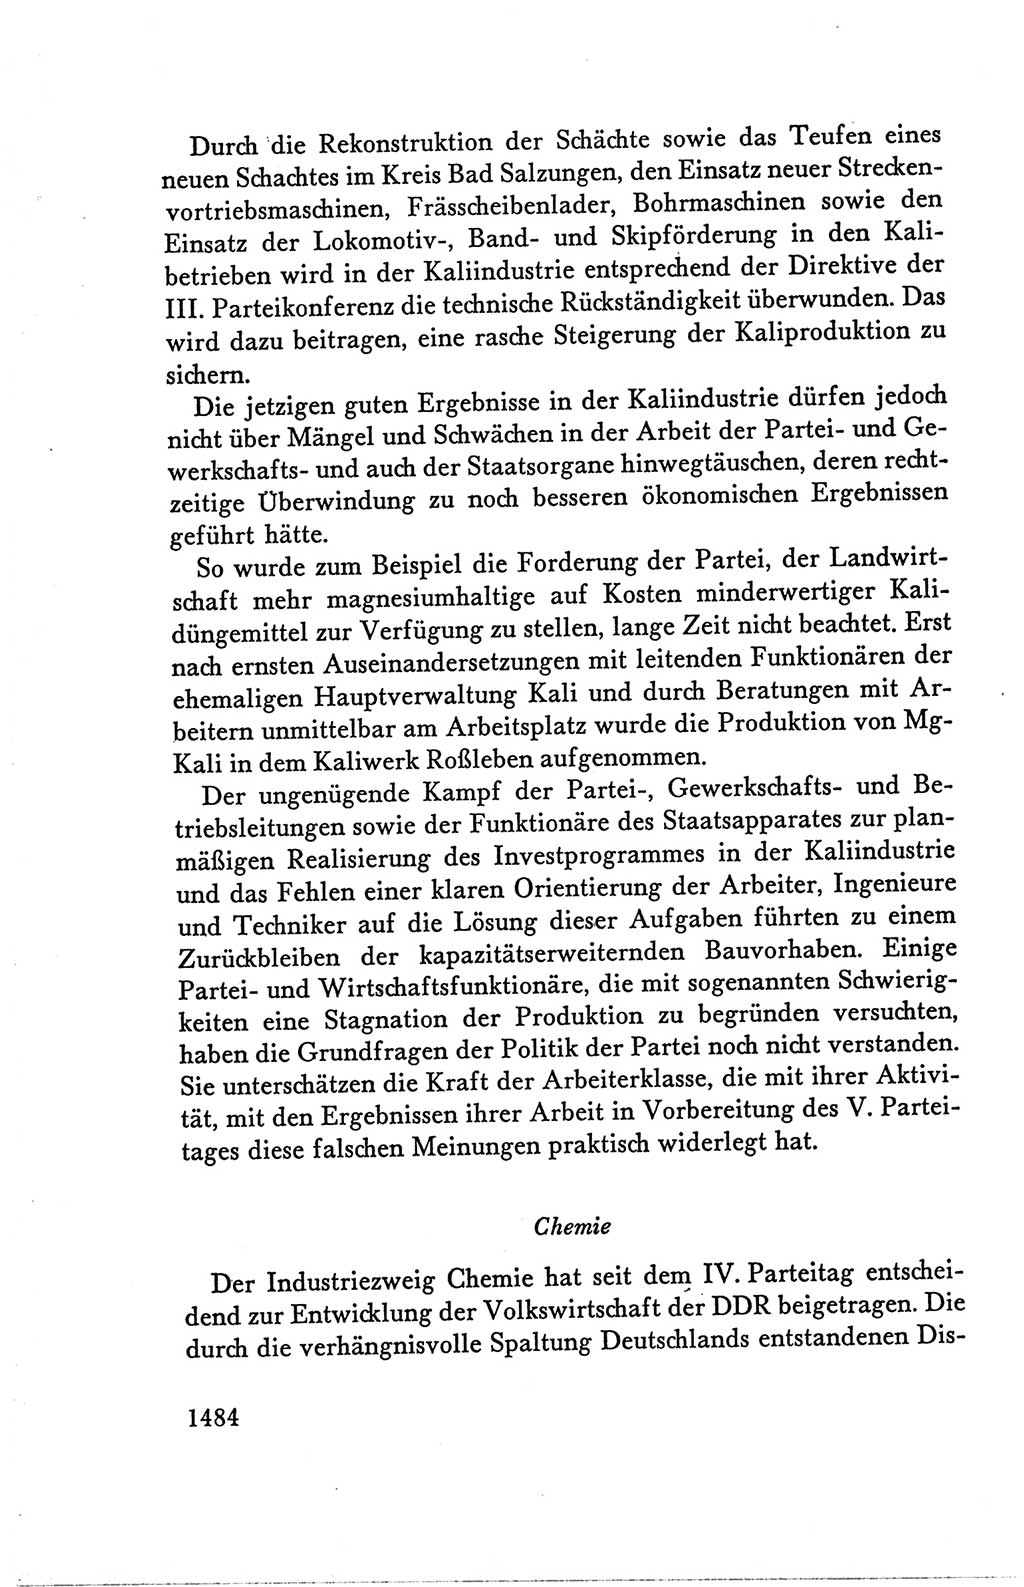 Protokoll der Verhandlungen des Ⅴ. Parteitages der Sozialistischen Einheitspartei Deutschlands (SED) [Deutsche Demokratische Republik (DDR)] 1958, Seite 1484